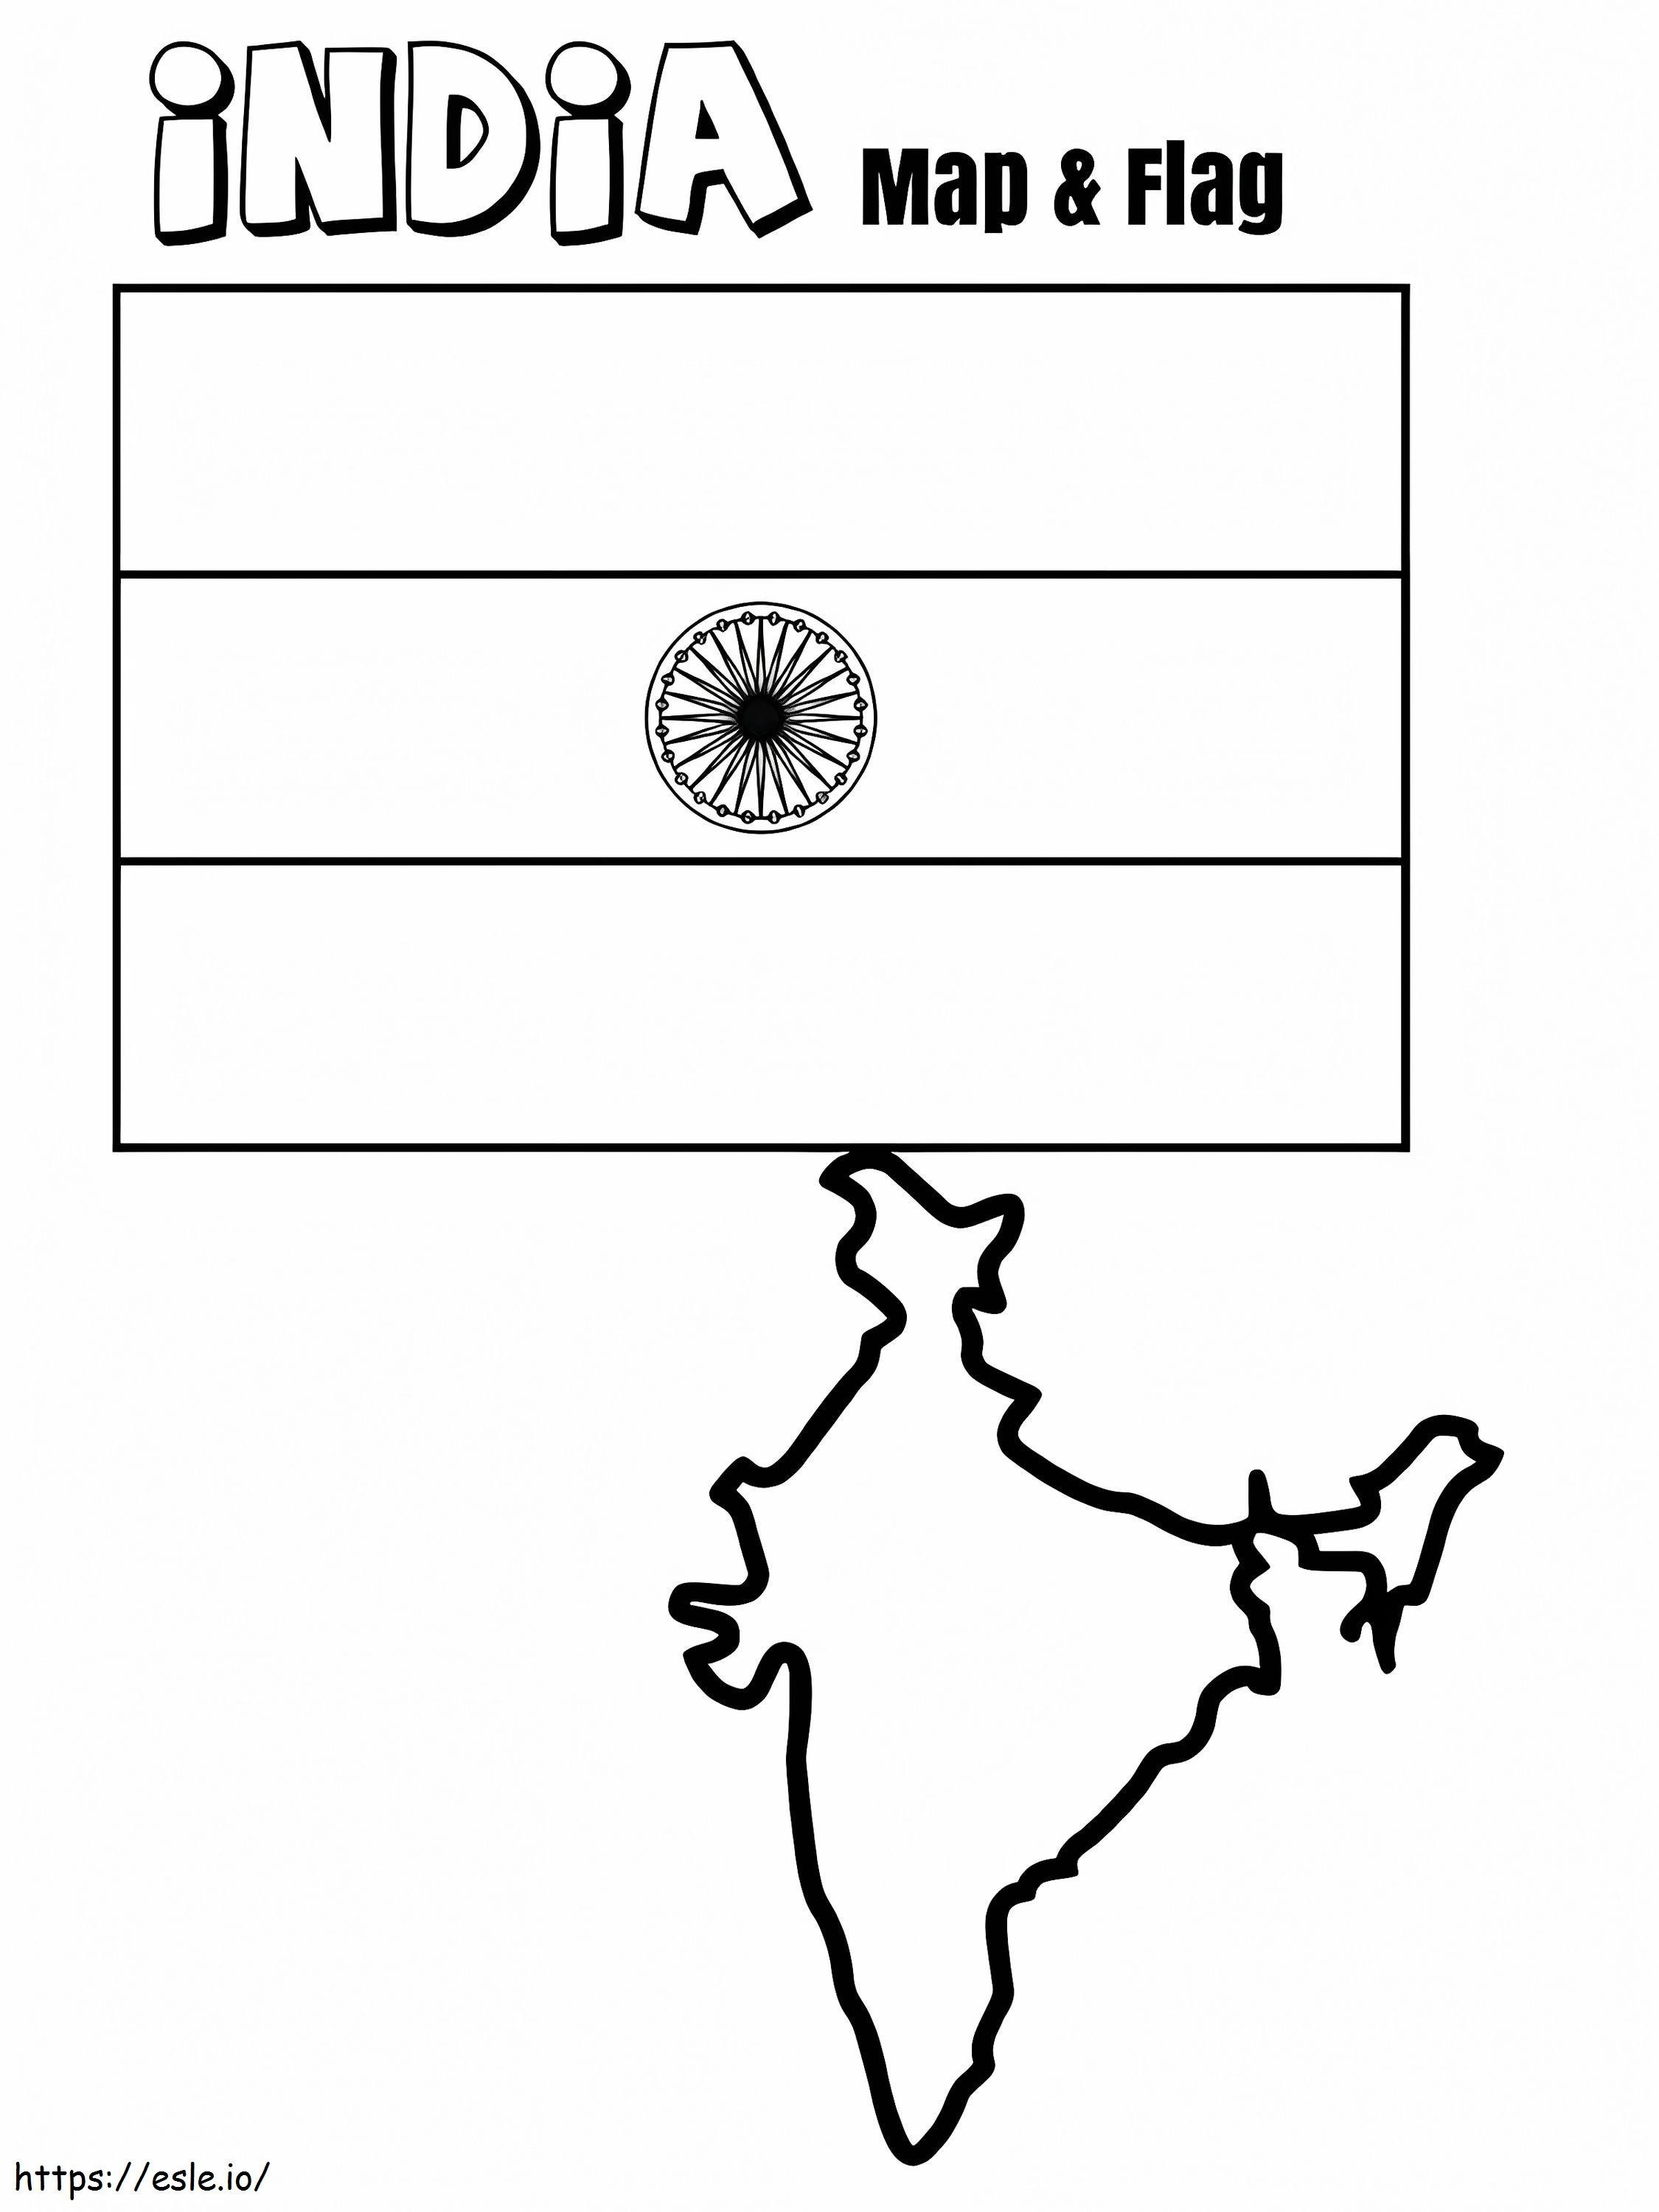 Indien-Flagge und Karte ausmalbilder